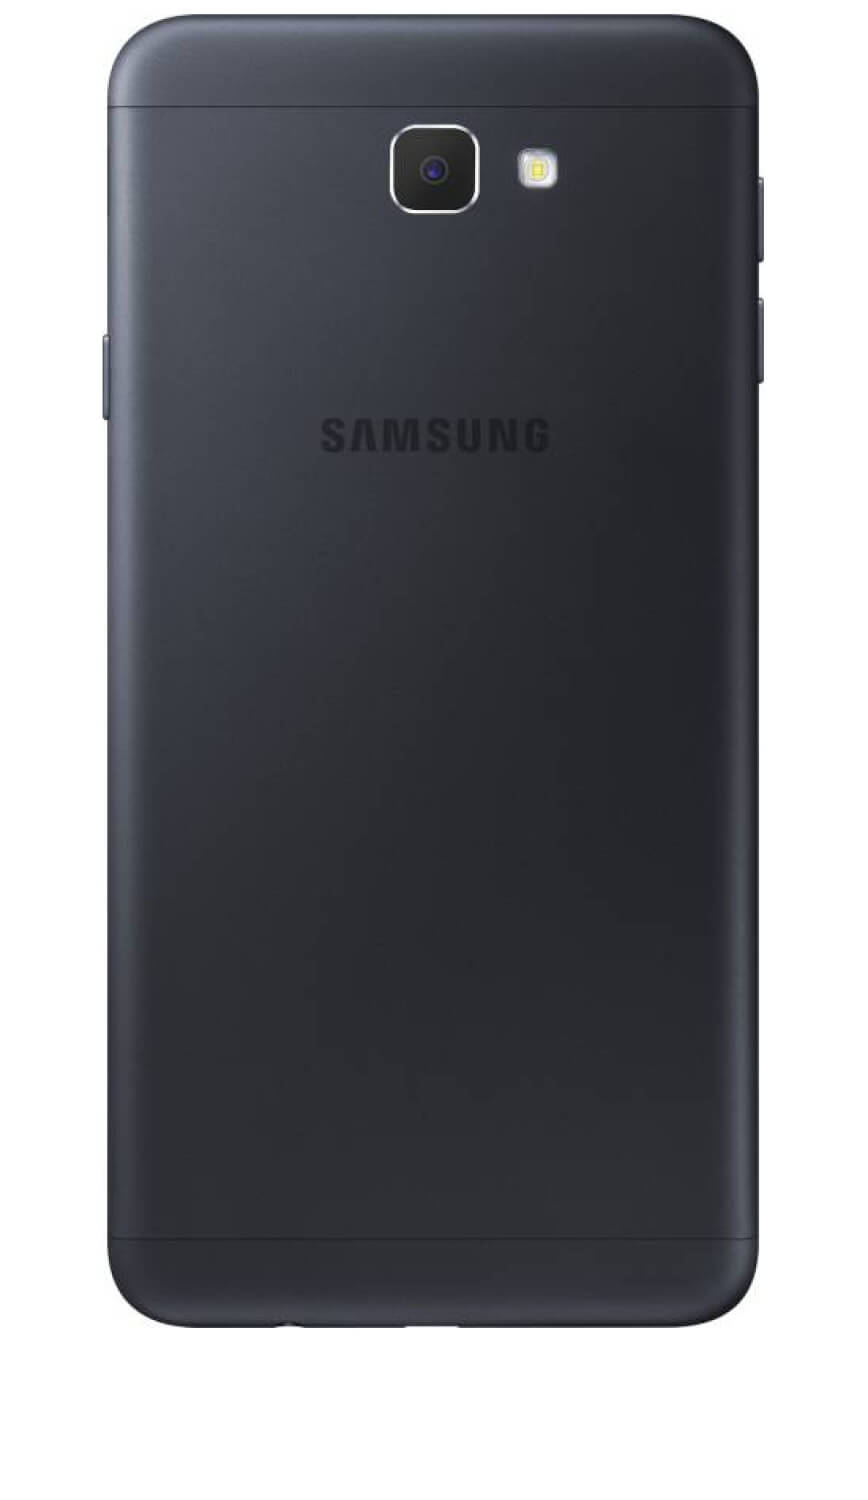 Samsung Galaxy On NXT